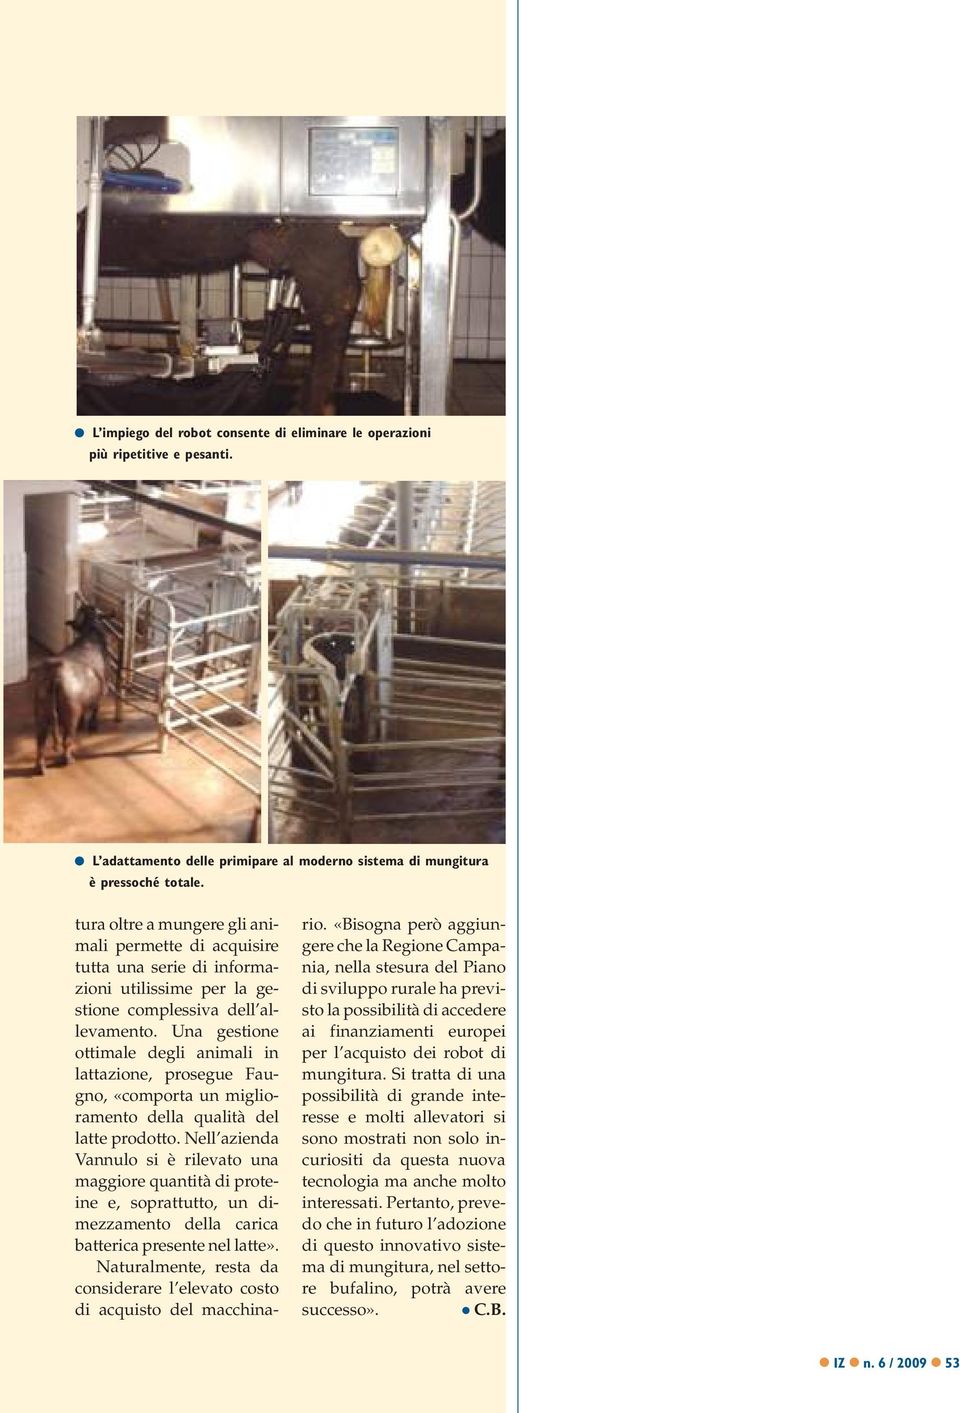 Una gestione ottimale degli animali in lattazione, prosegue Faugno, «comporta un miglioramento della qualità del latte prodotto.